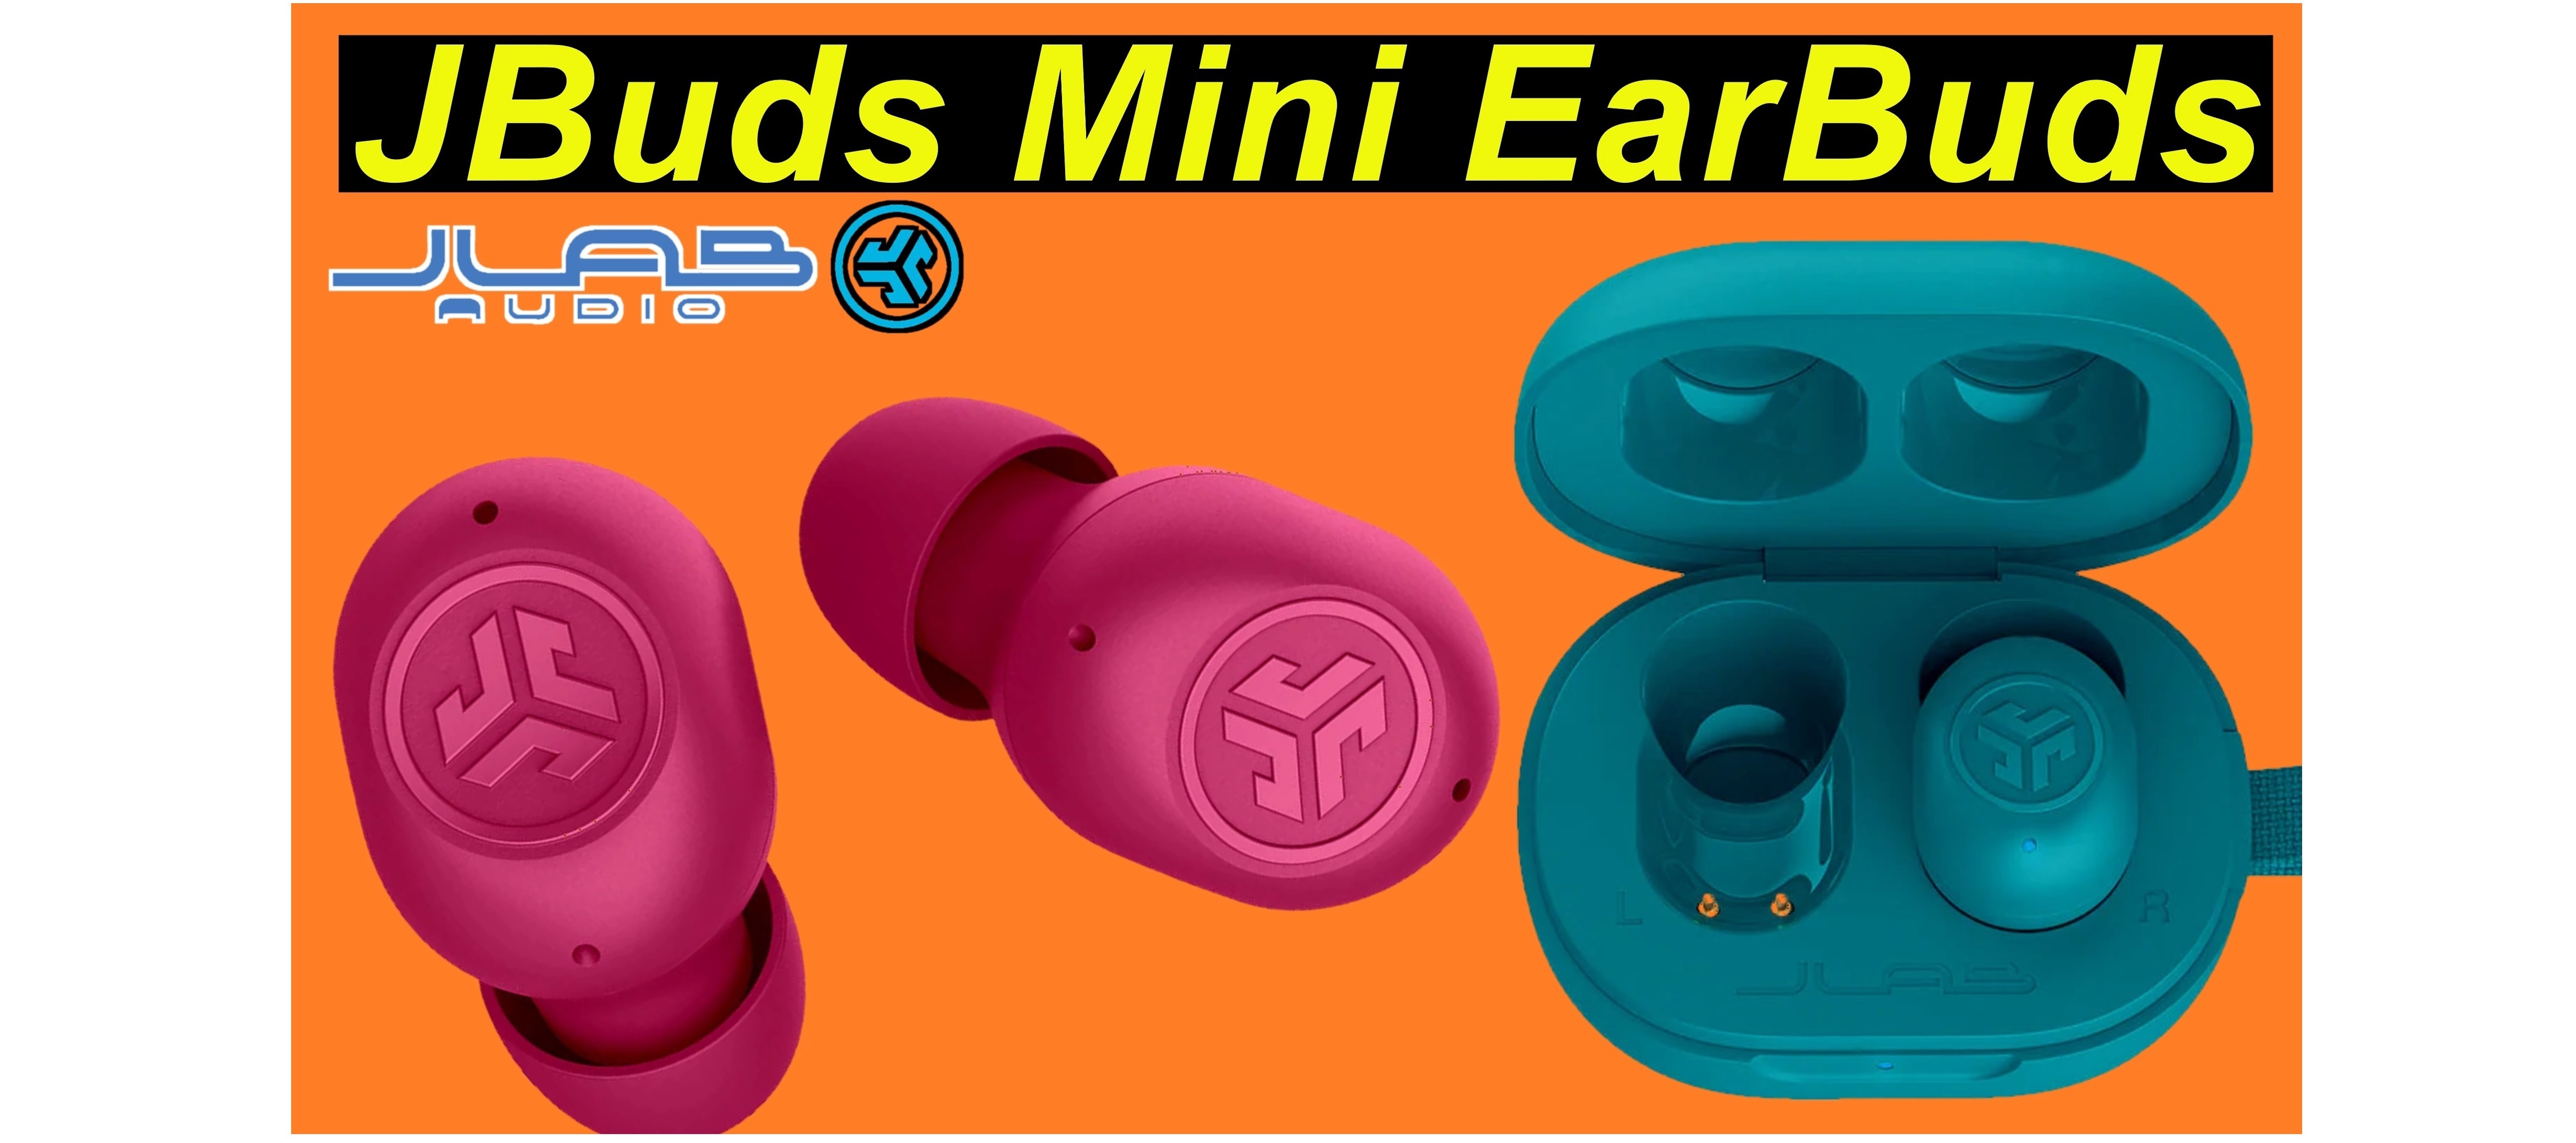 JLab JBuds Mini EarBuds - klein und lautstark